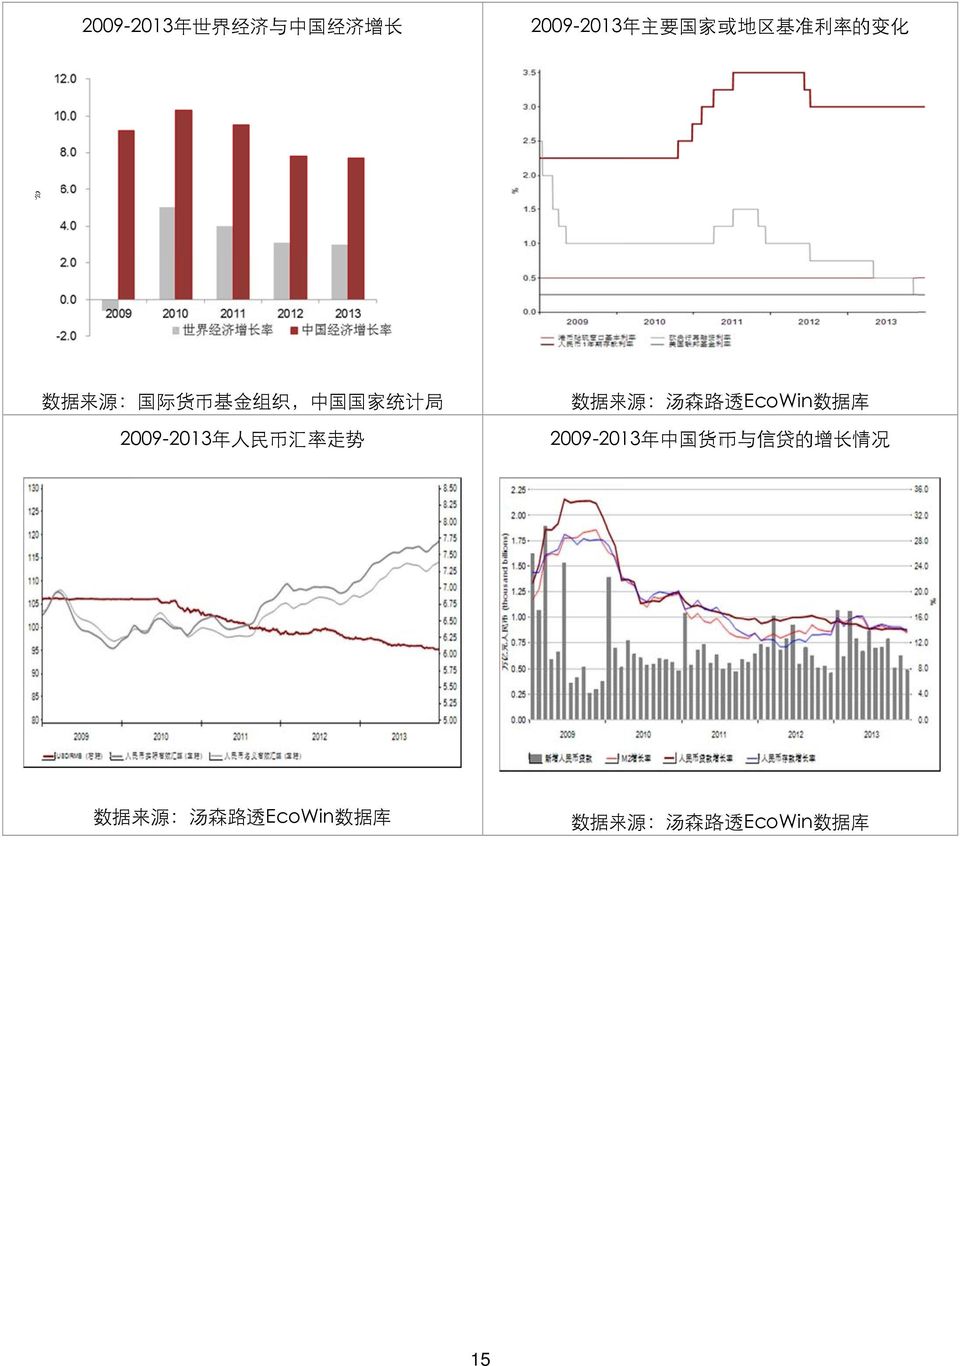 率 走 势 数 据 来 源 : 汤 森 路 透 EcoWin 数 据 库 2009-2013 年 中 国 货 币 与 信 贷 的 增 长